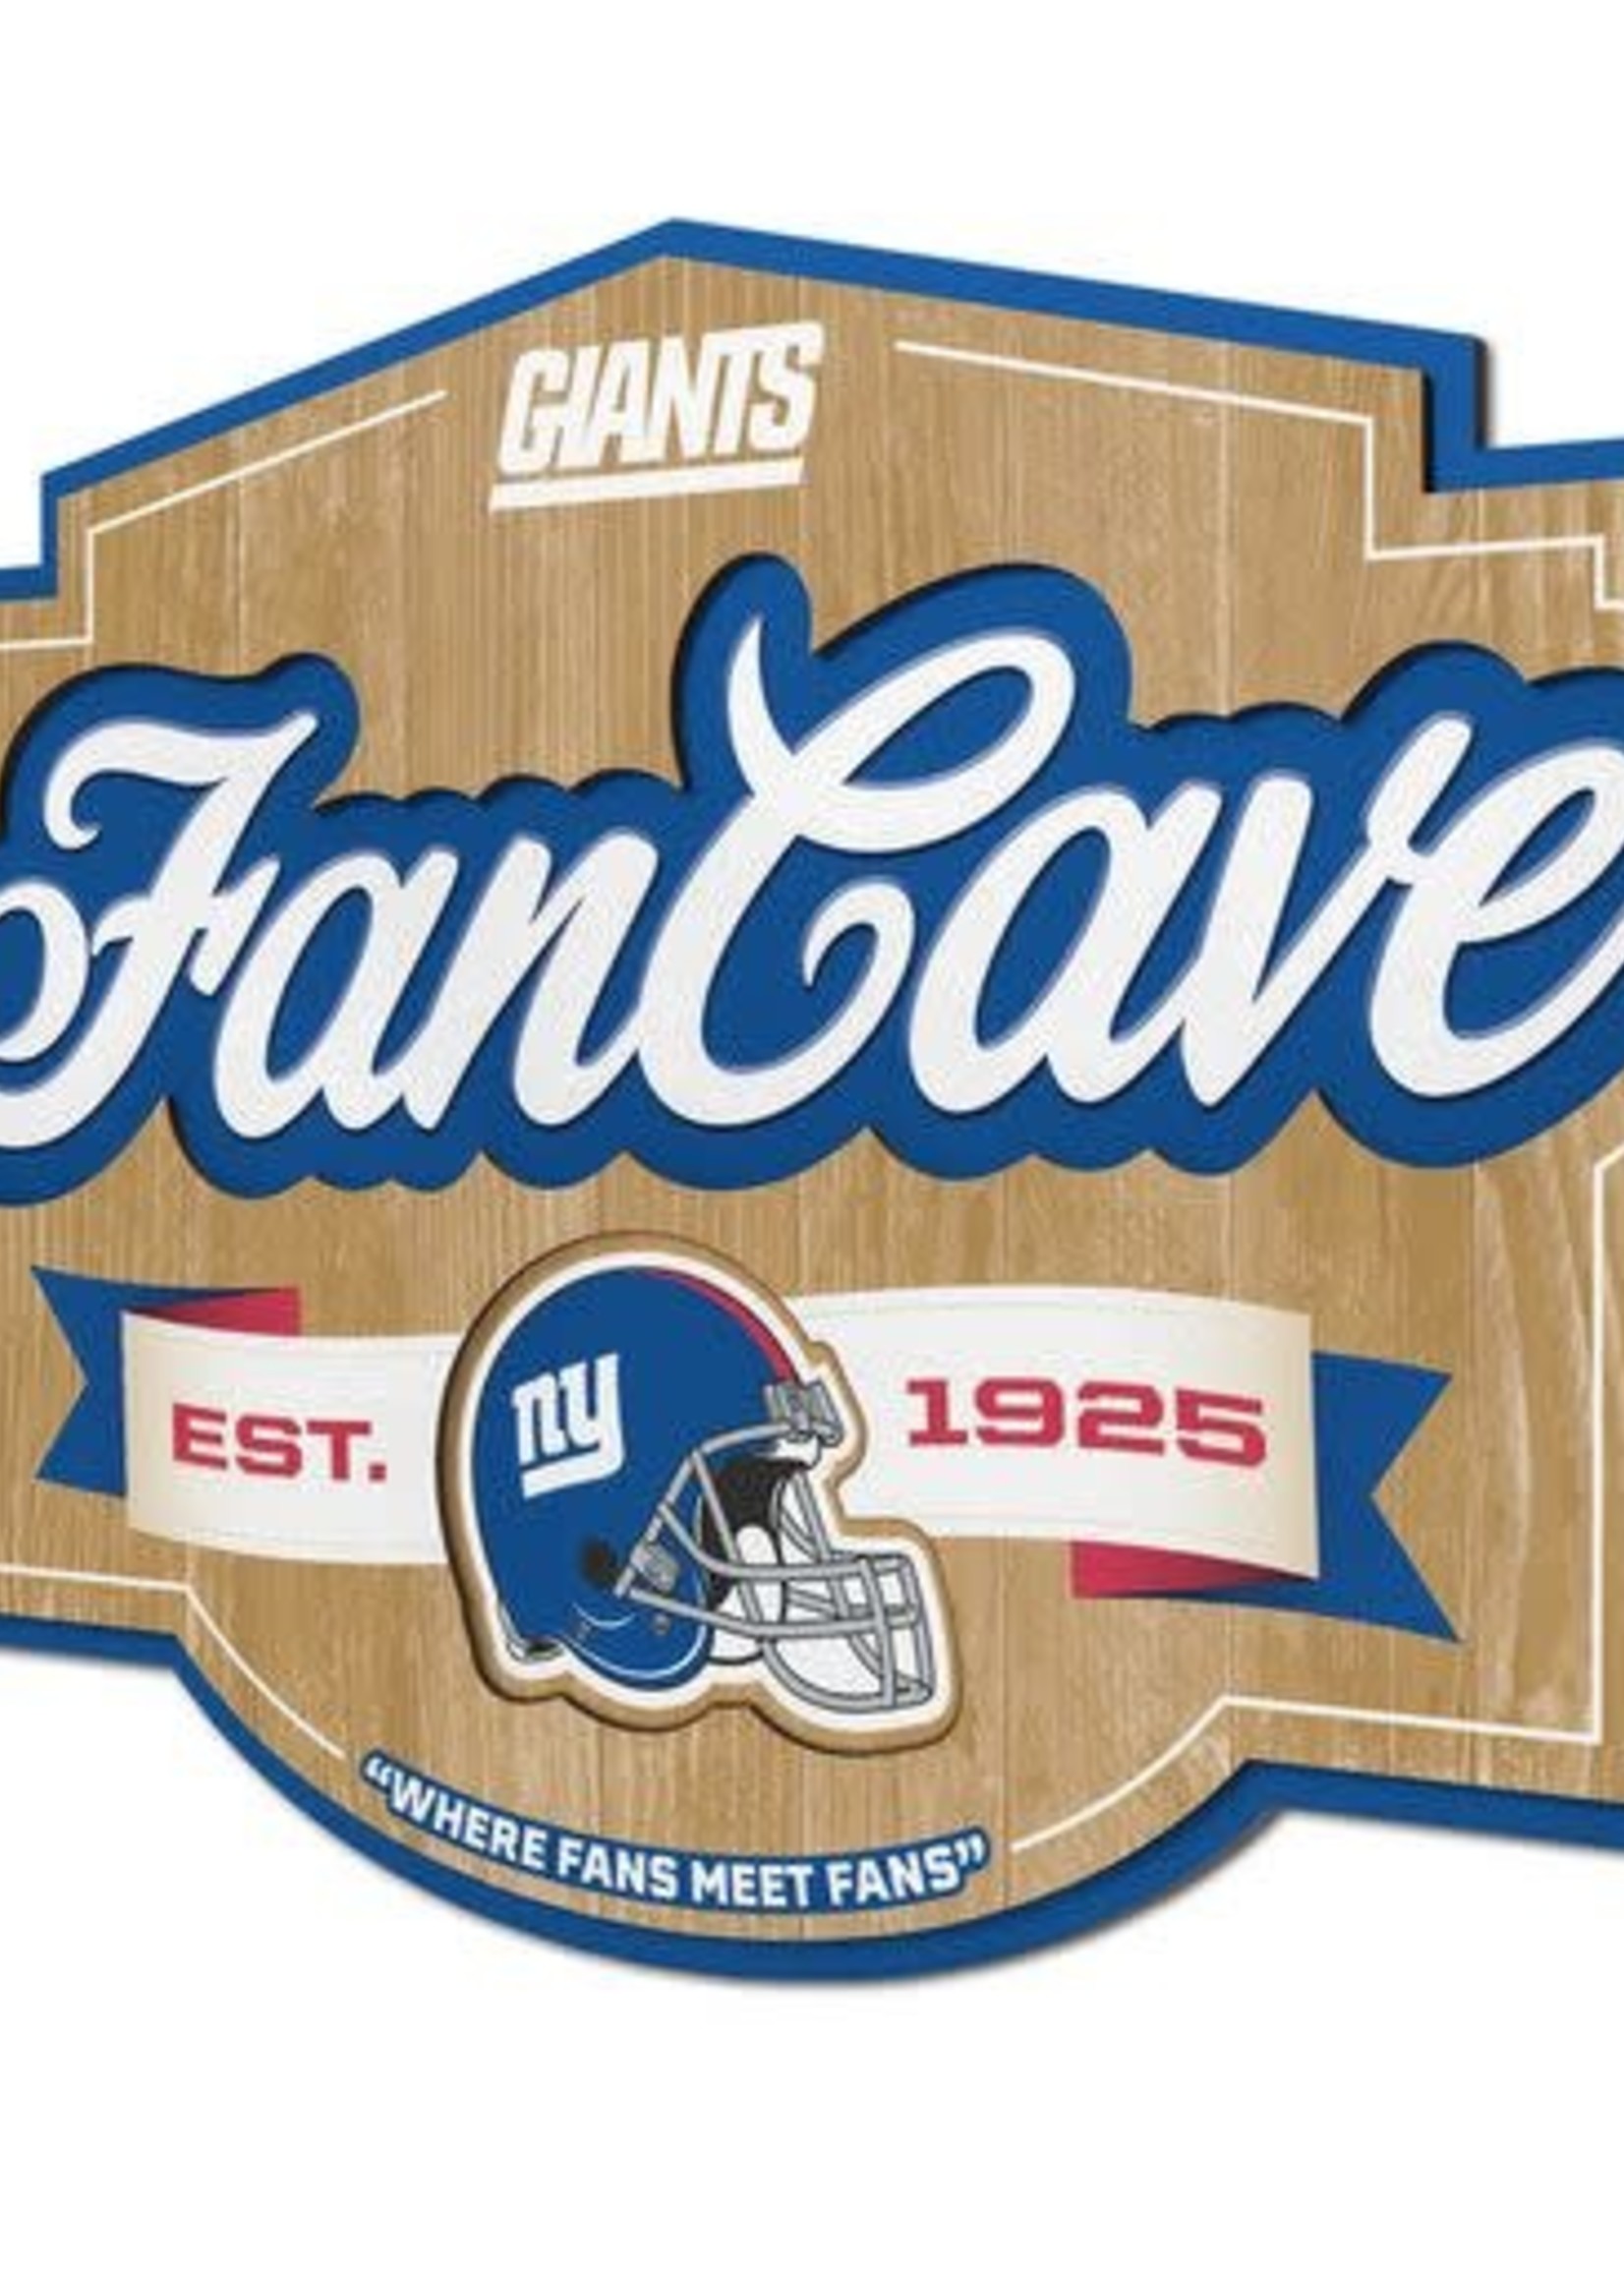 Giants FanCave